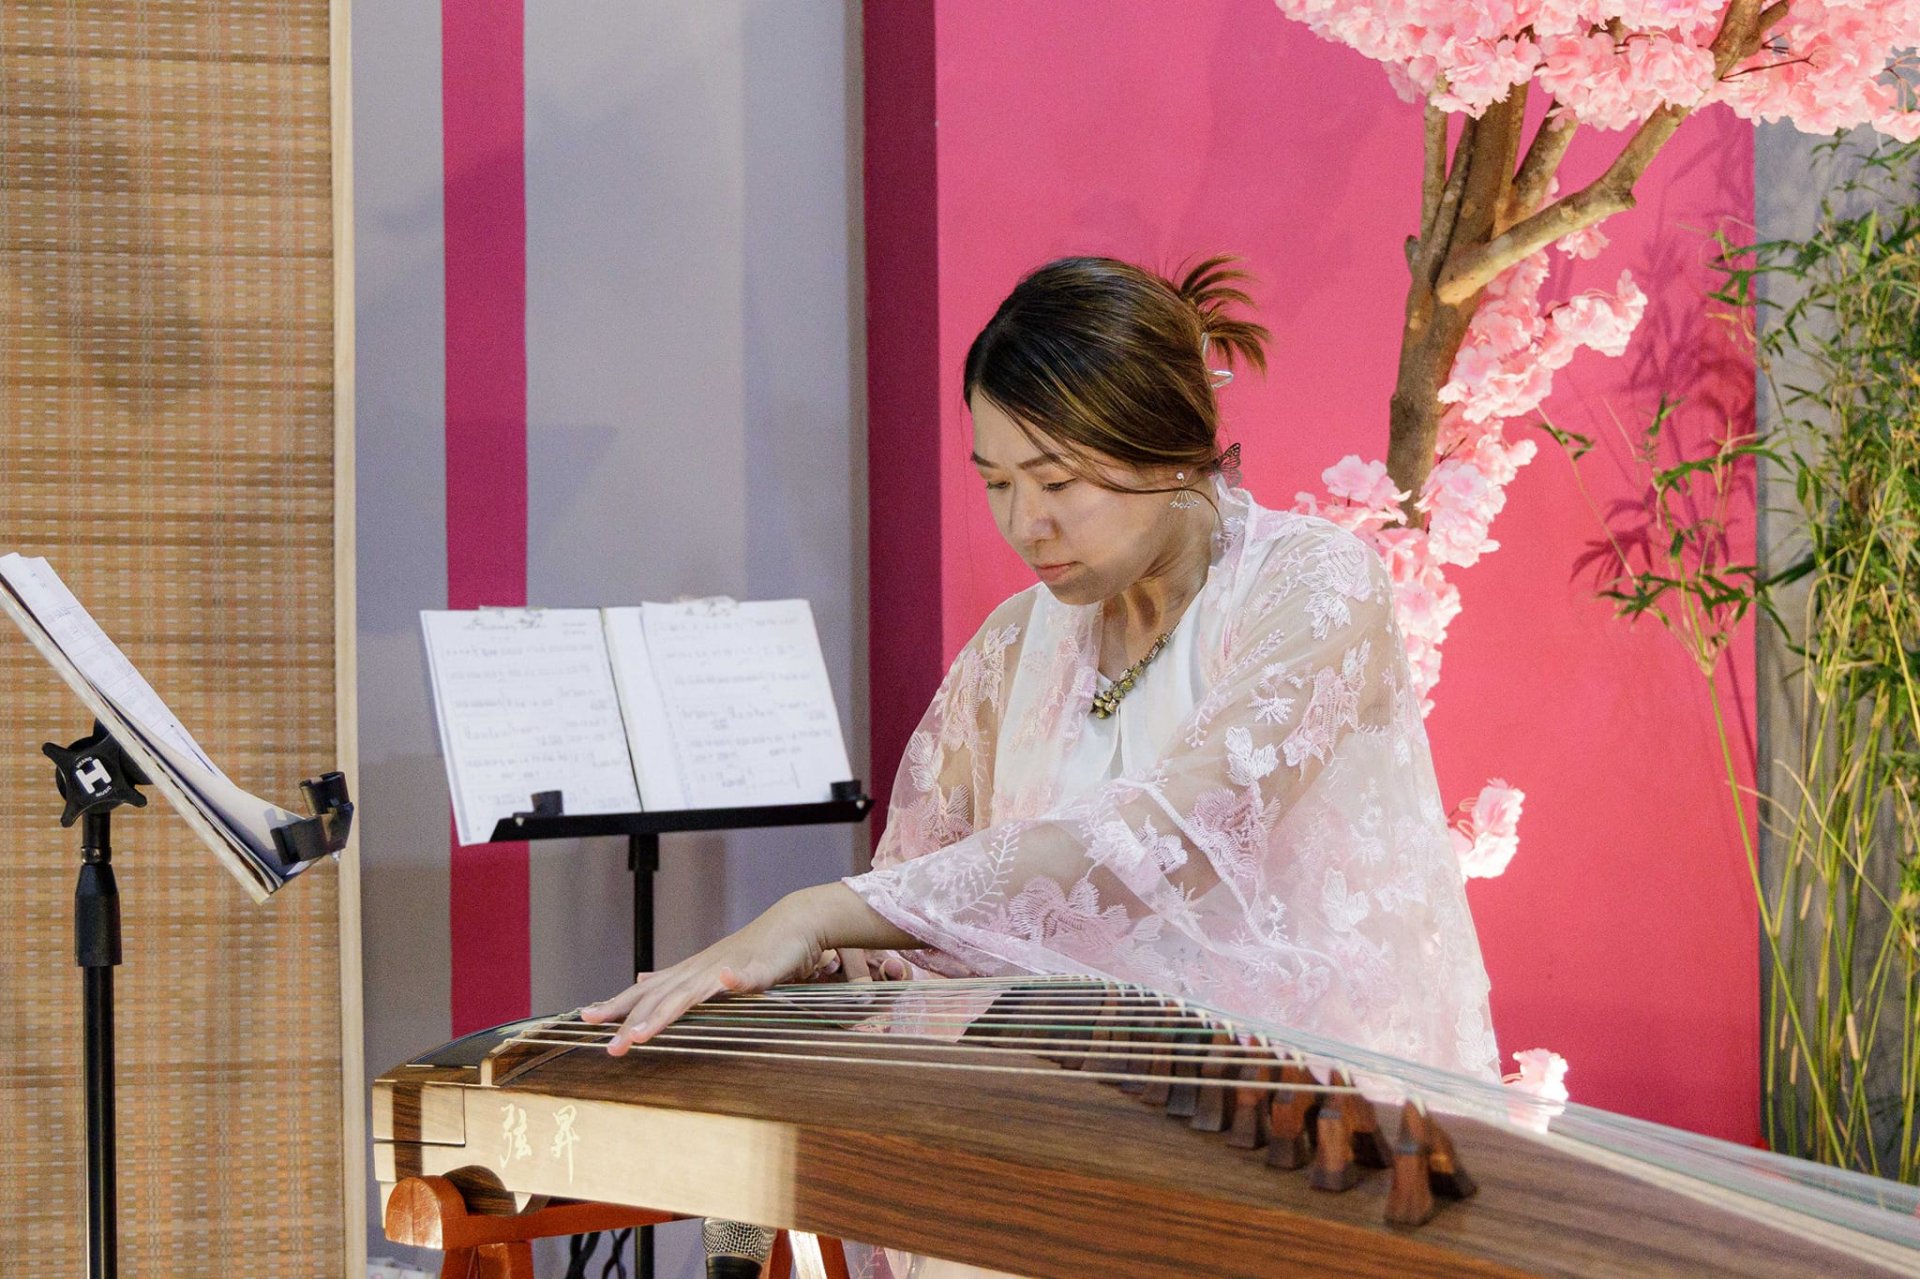 ม.รังสิต สร้าง "ห้องเรียนดนตรีจีน" ส่งเสริมการเรียนรู้ภาษาจีนอย่างสมบูรณ์แบบ แห่งแรกในโลก